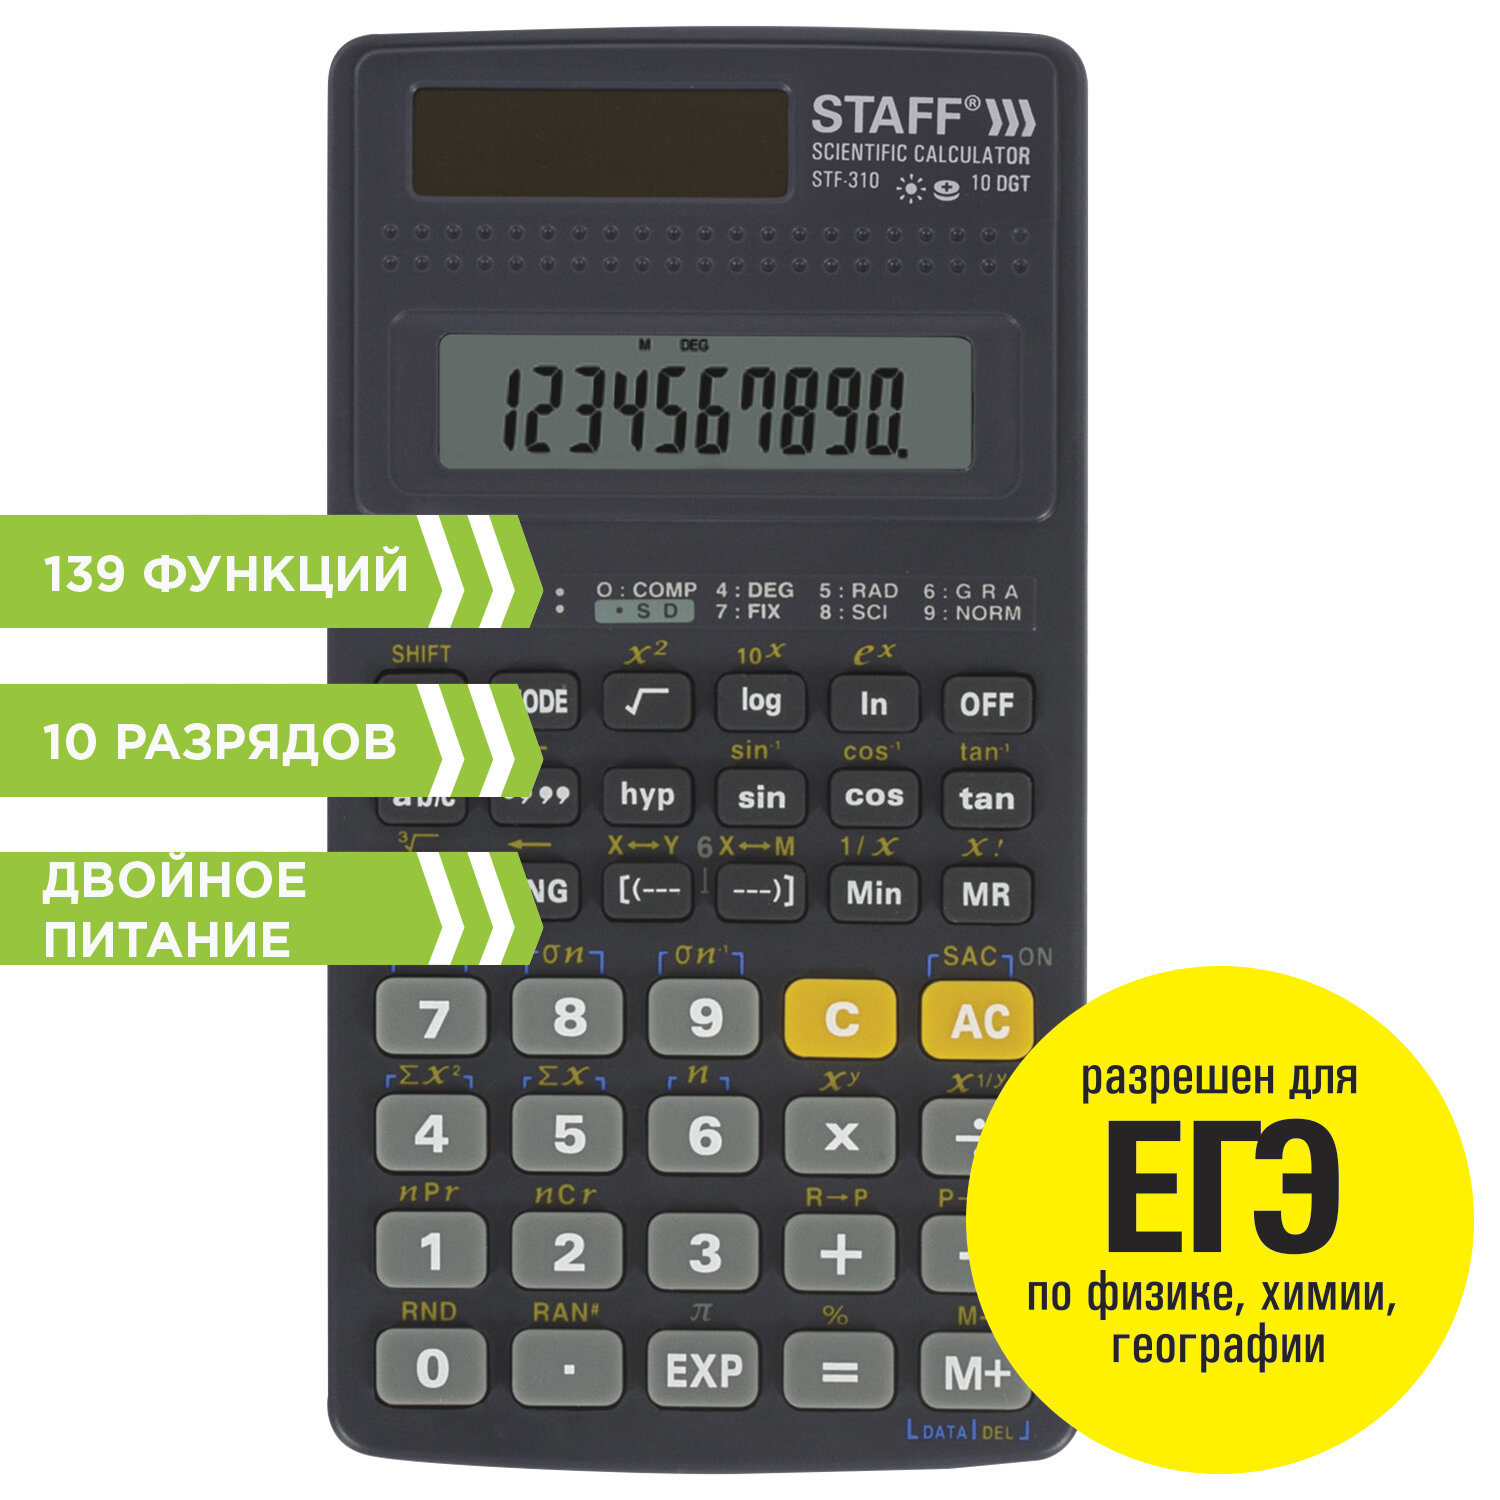 Калькулятор инженерный STAFF STF-310 (142х78 мм), 139 функций, 10+2 разрядов, двойное питание, 25027